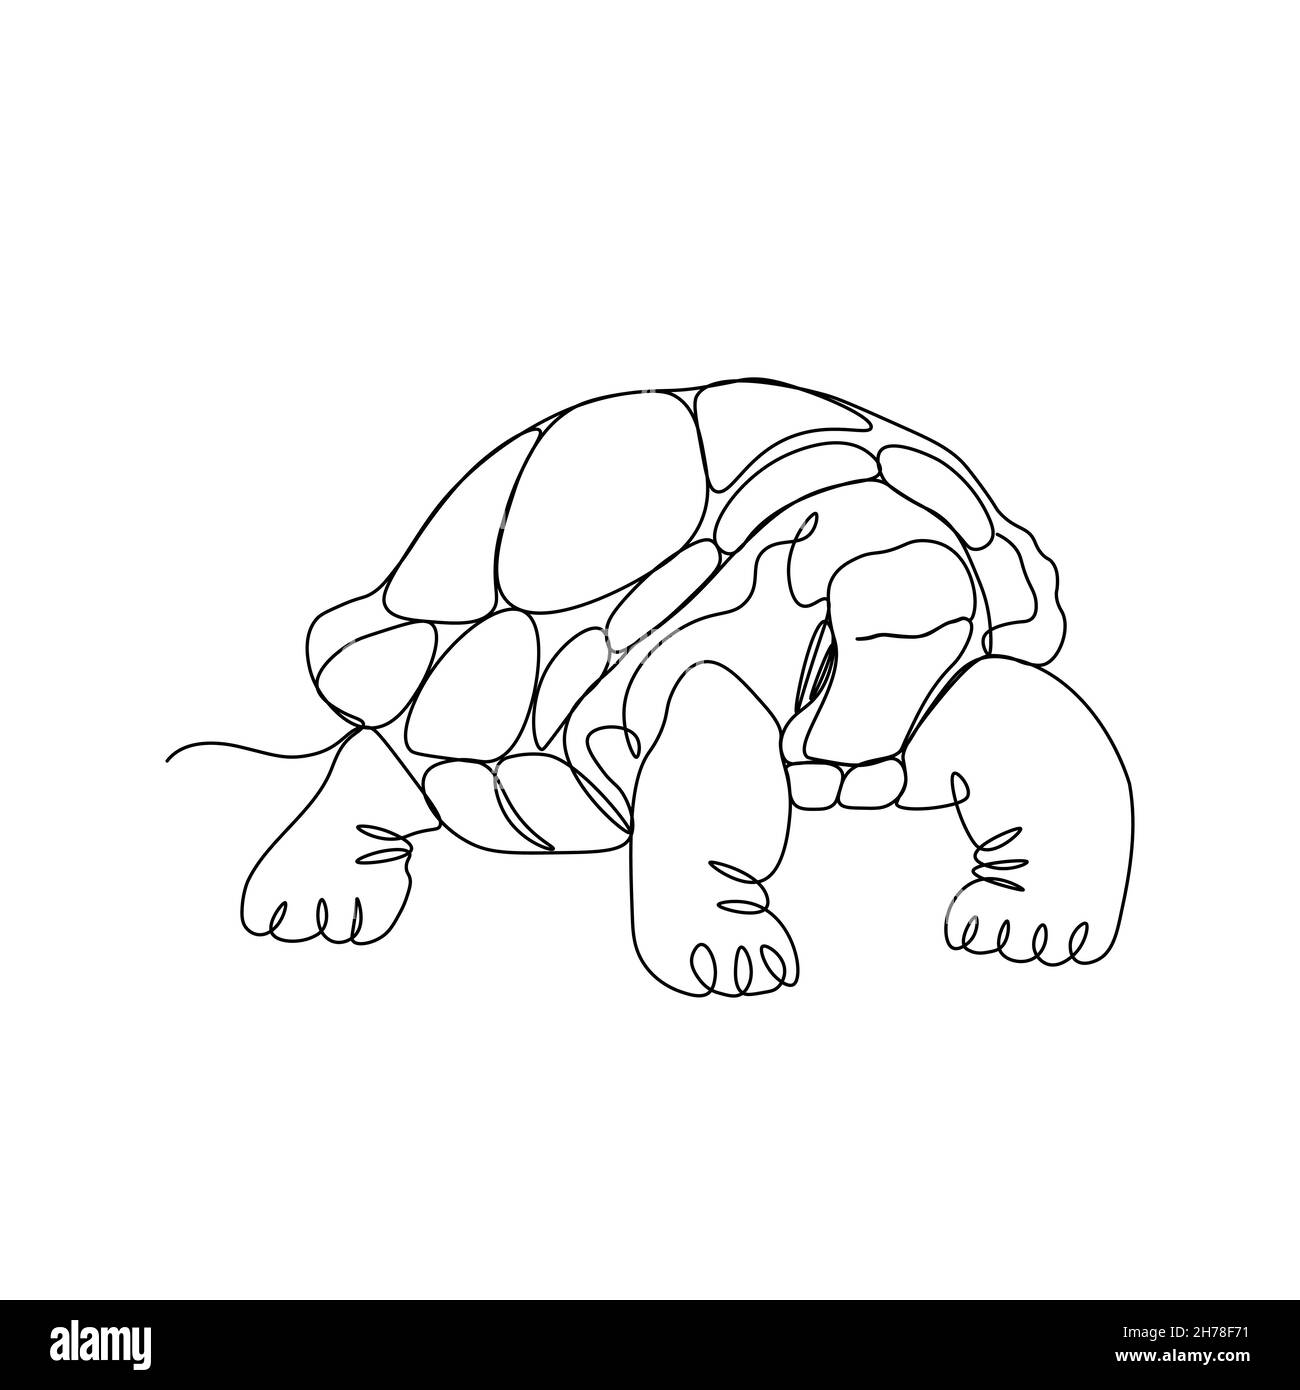 Un dessin d'une seule ligne de tortue terrestre pour l'identité du logo.Adorable créature reptile animal mascotte concept pour la fondation de conservation.Continuer Illustration de Vecteur